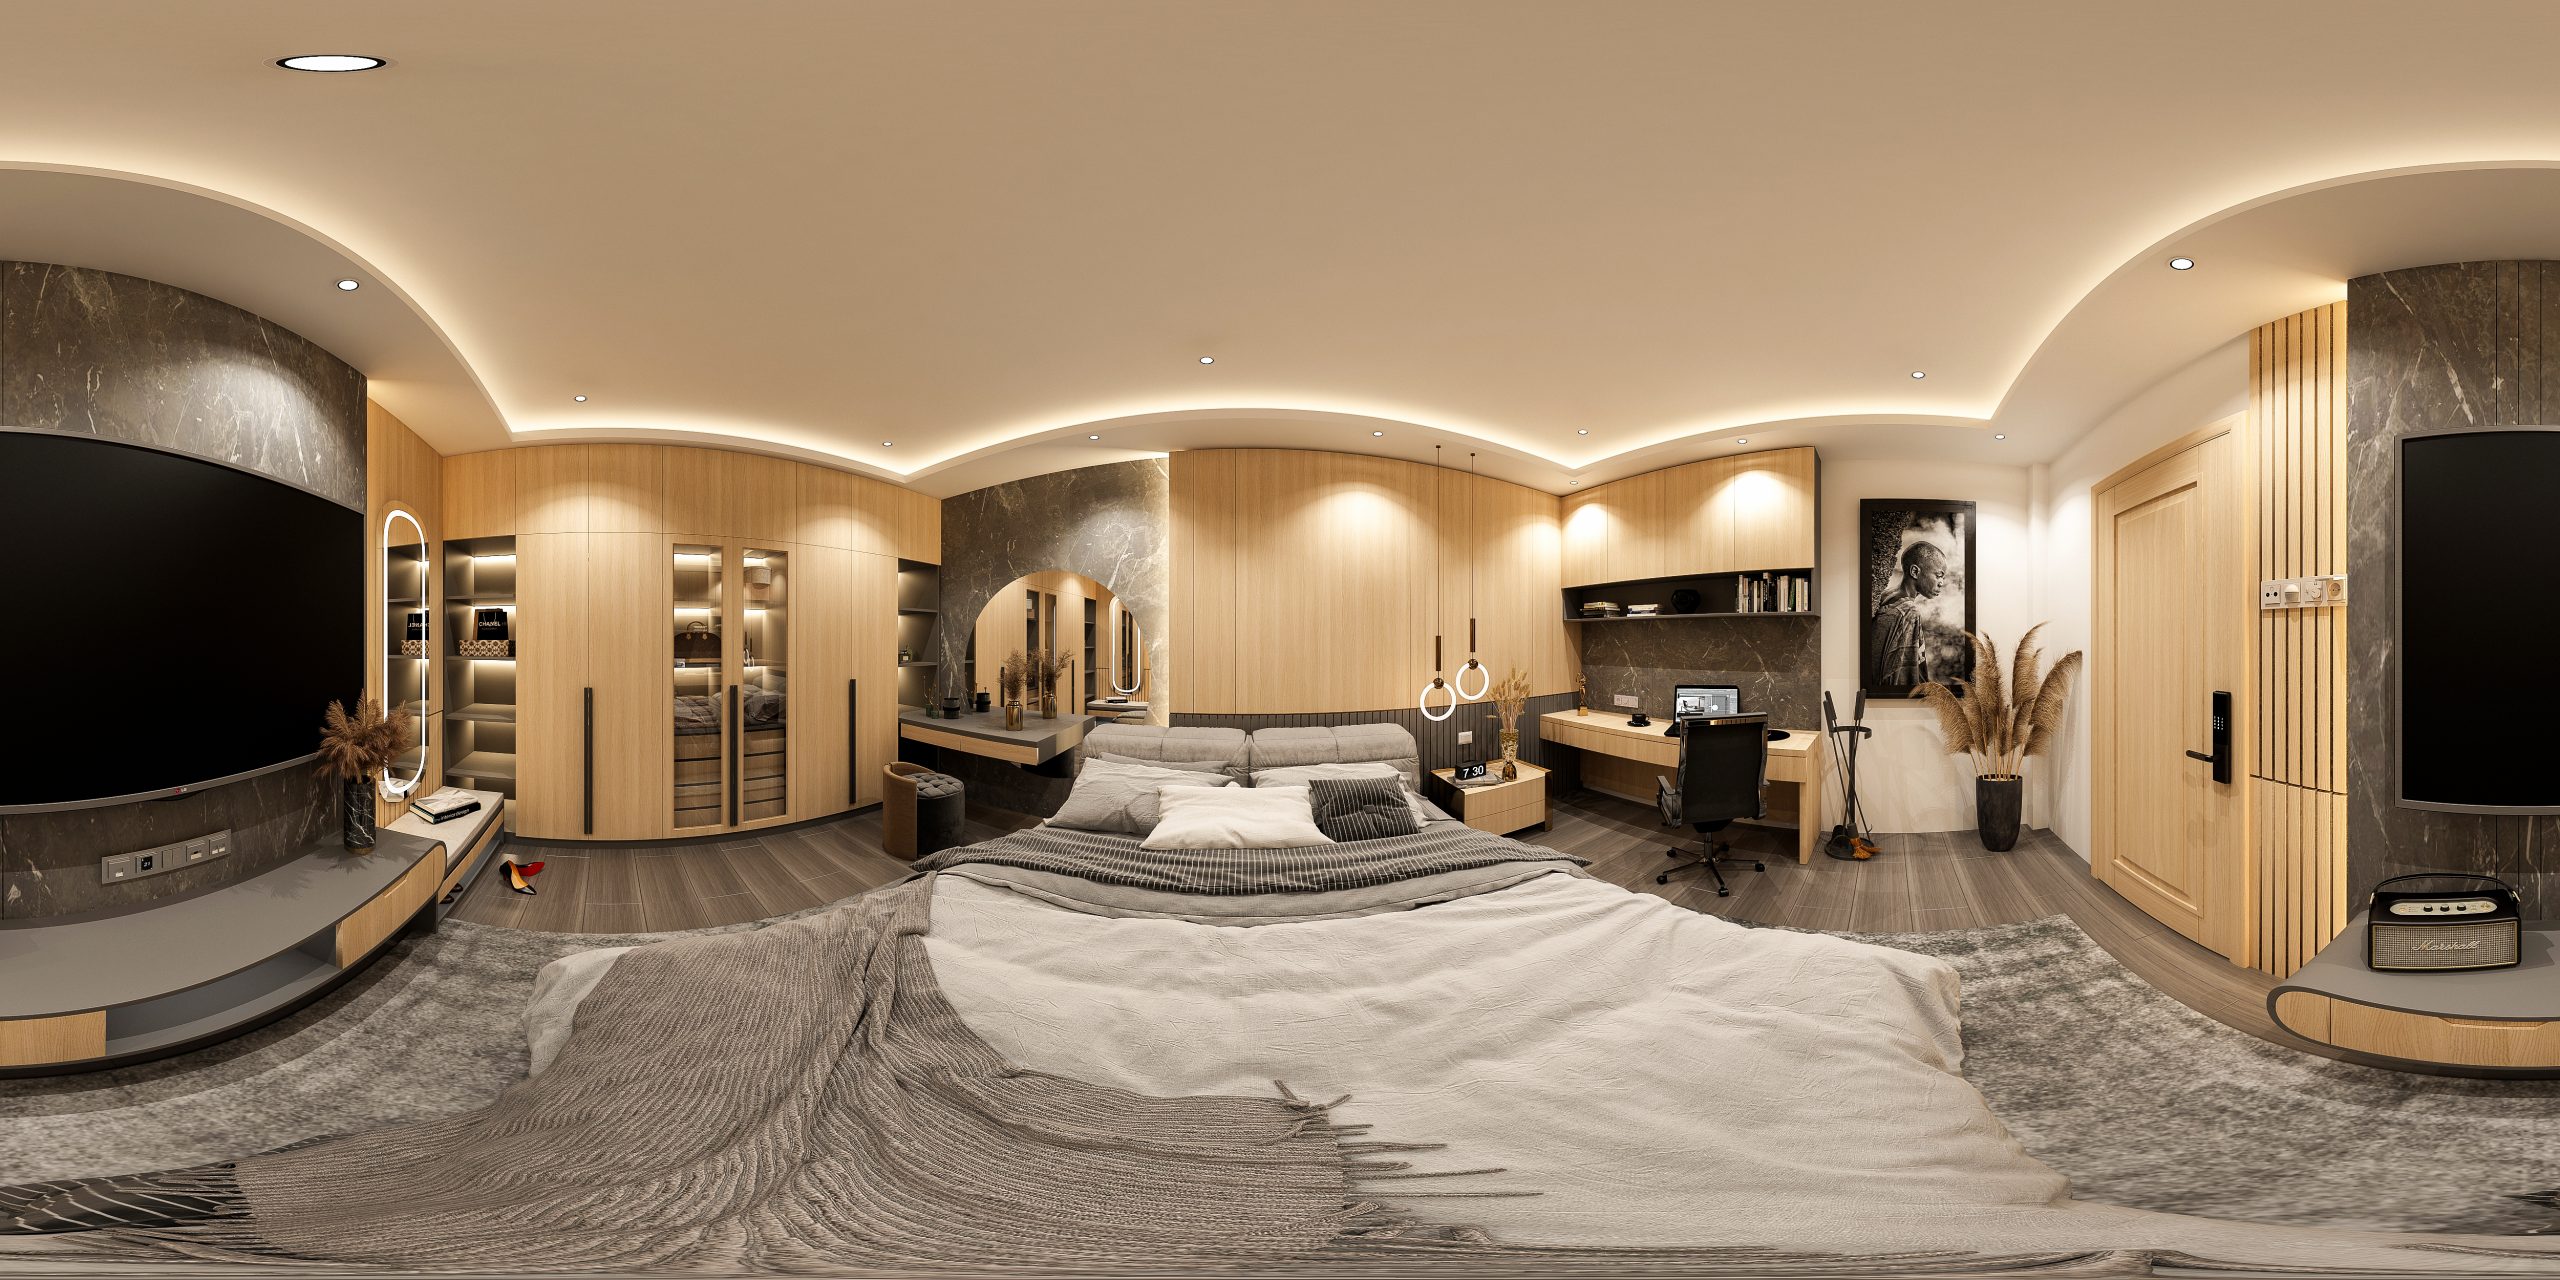 3D Interior Model Bed Room 0301 Scene 3dsmax